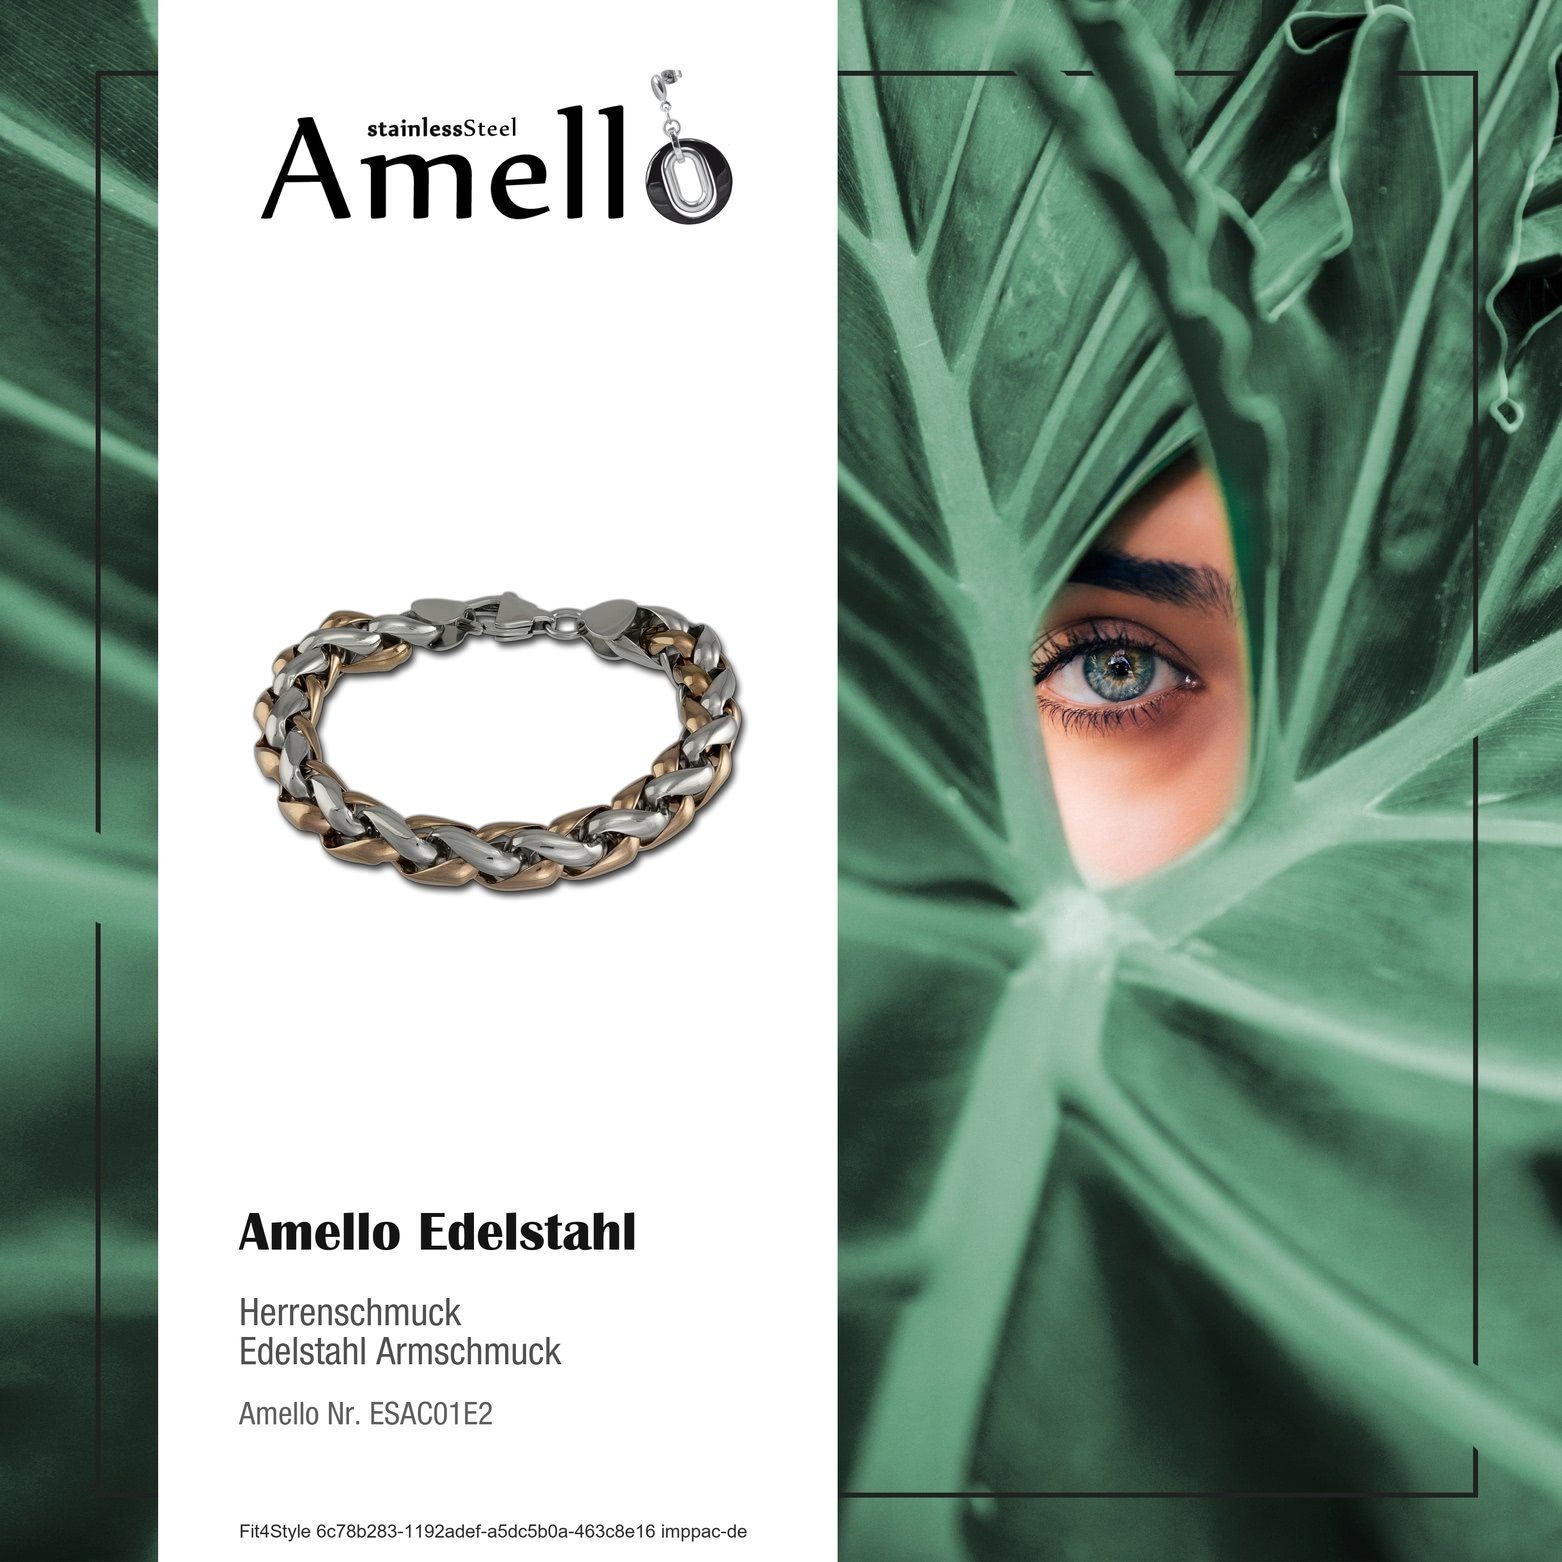 Edelstahlarmband roségold geflochten Herren Amello (Rosegold Armband Amello 333) Edelstahl Herren roségold Armband, vergoldet (Armband),